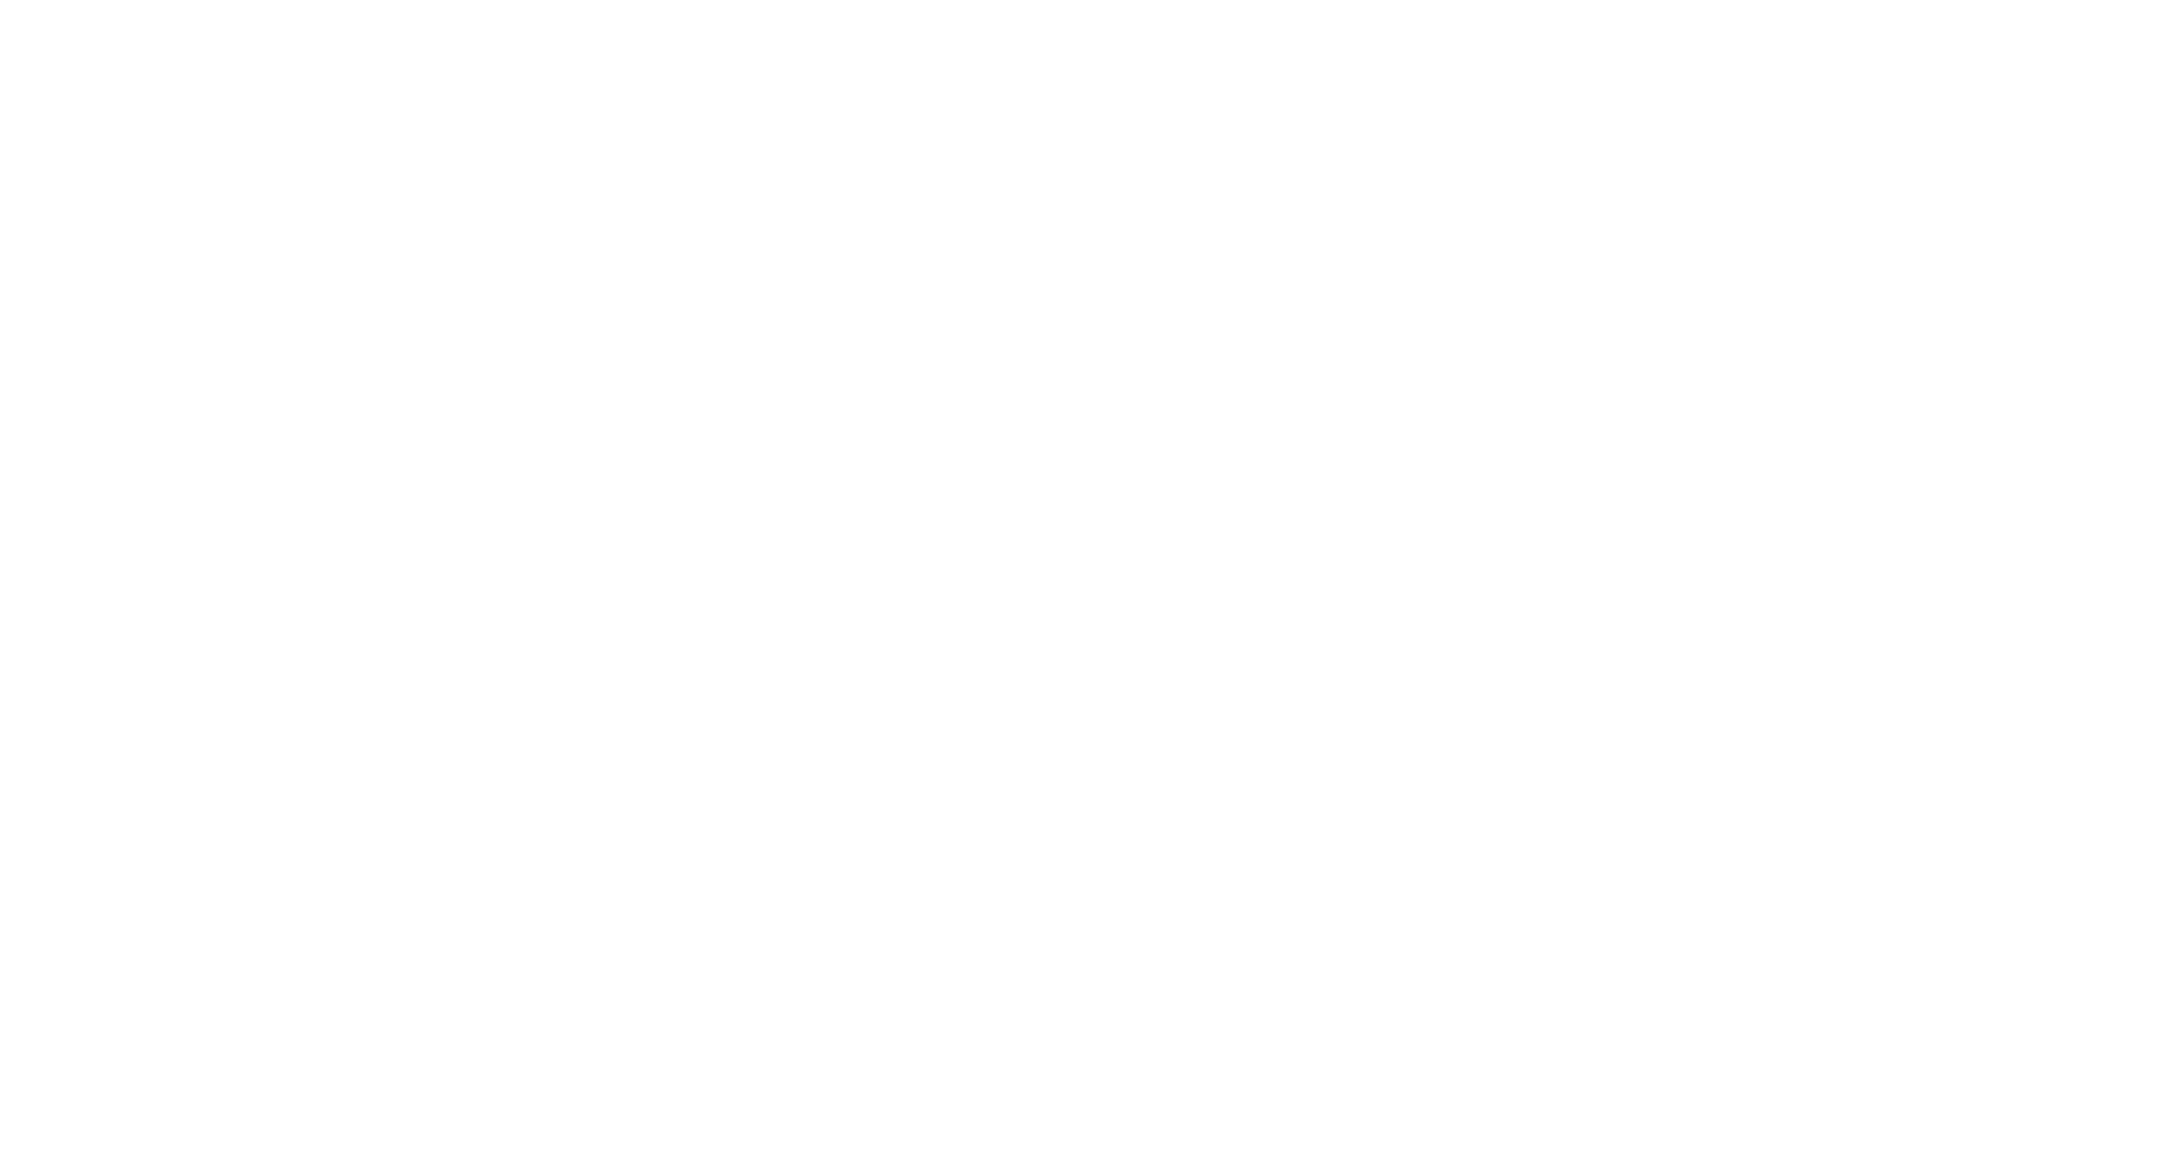 Data-Tax KG